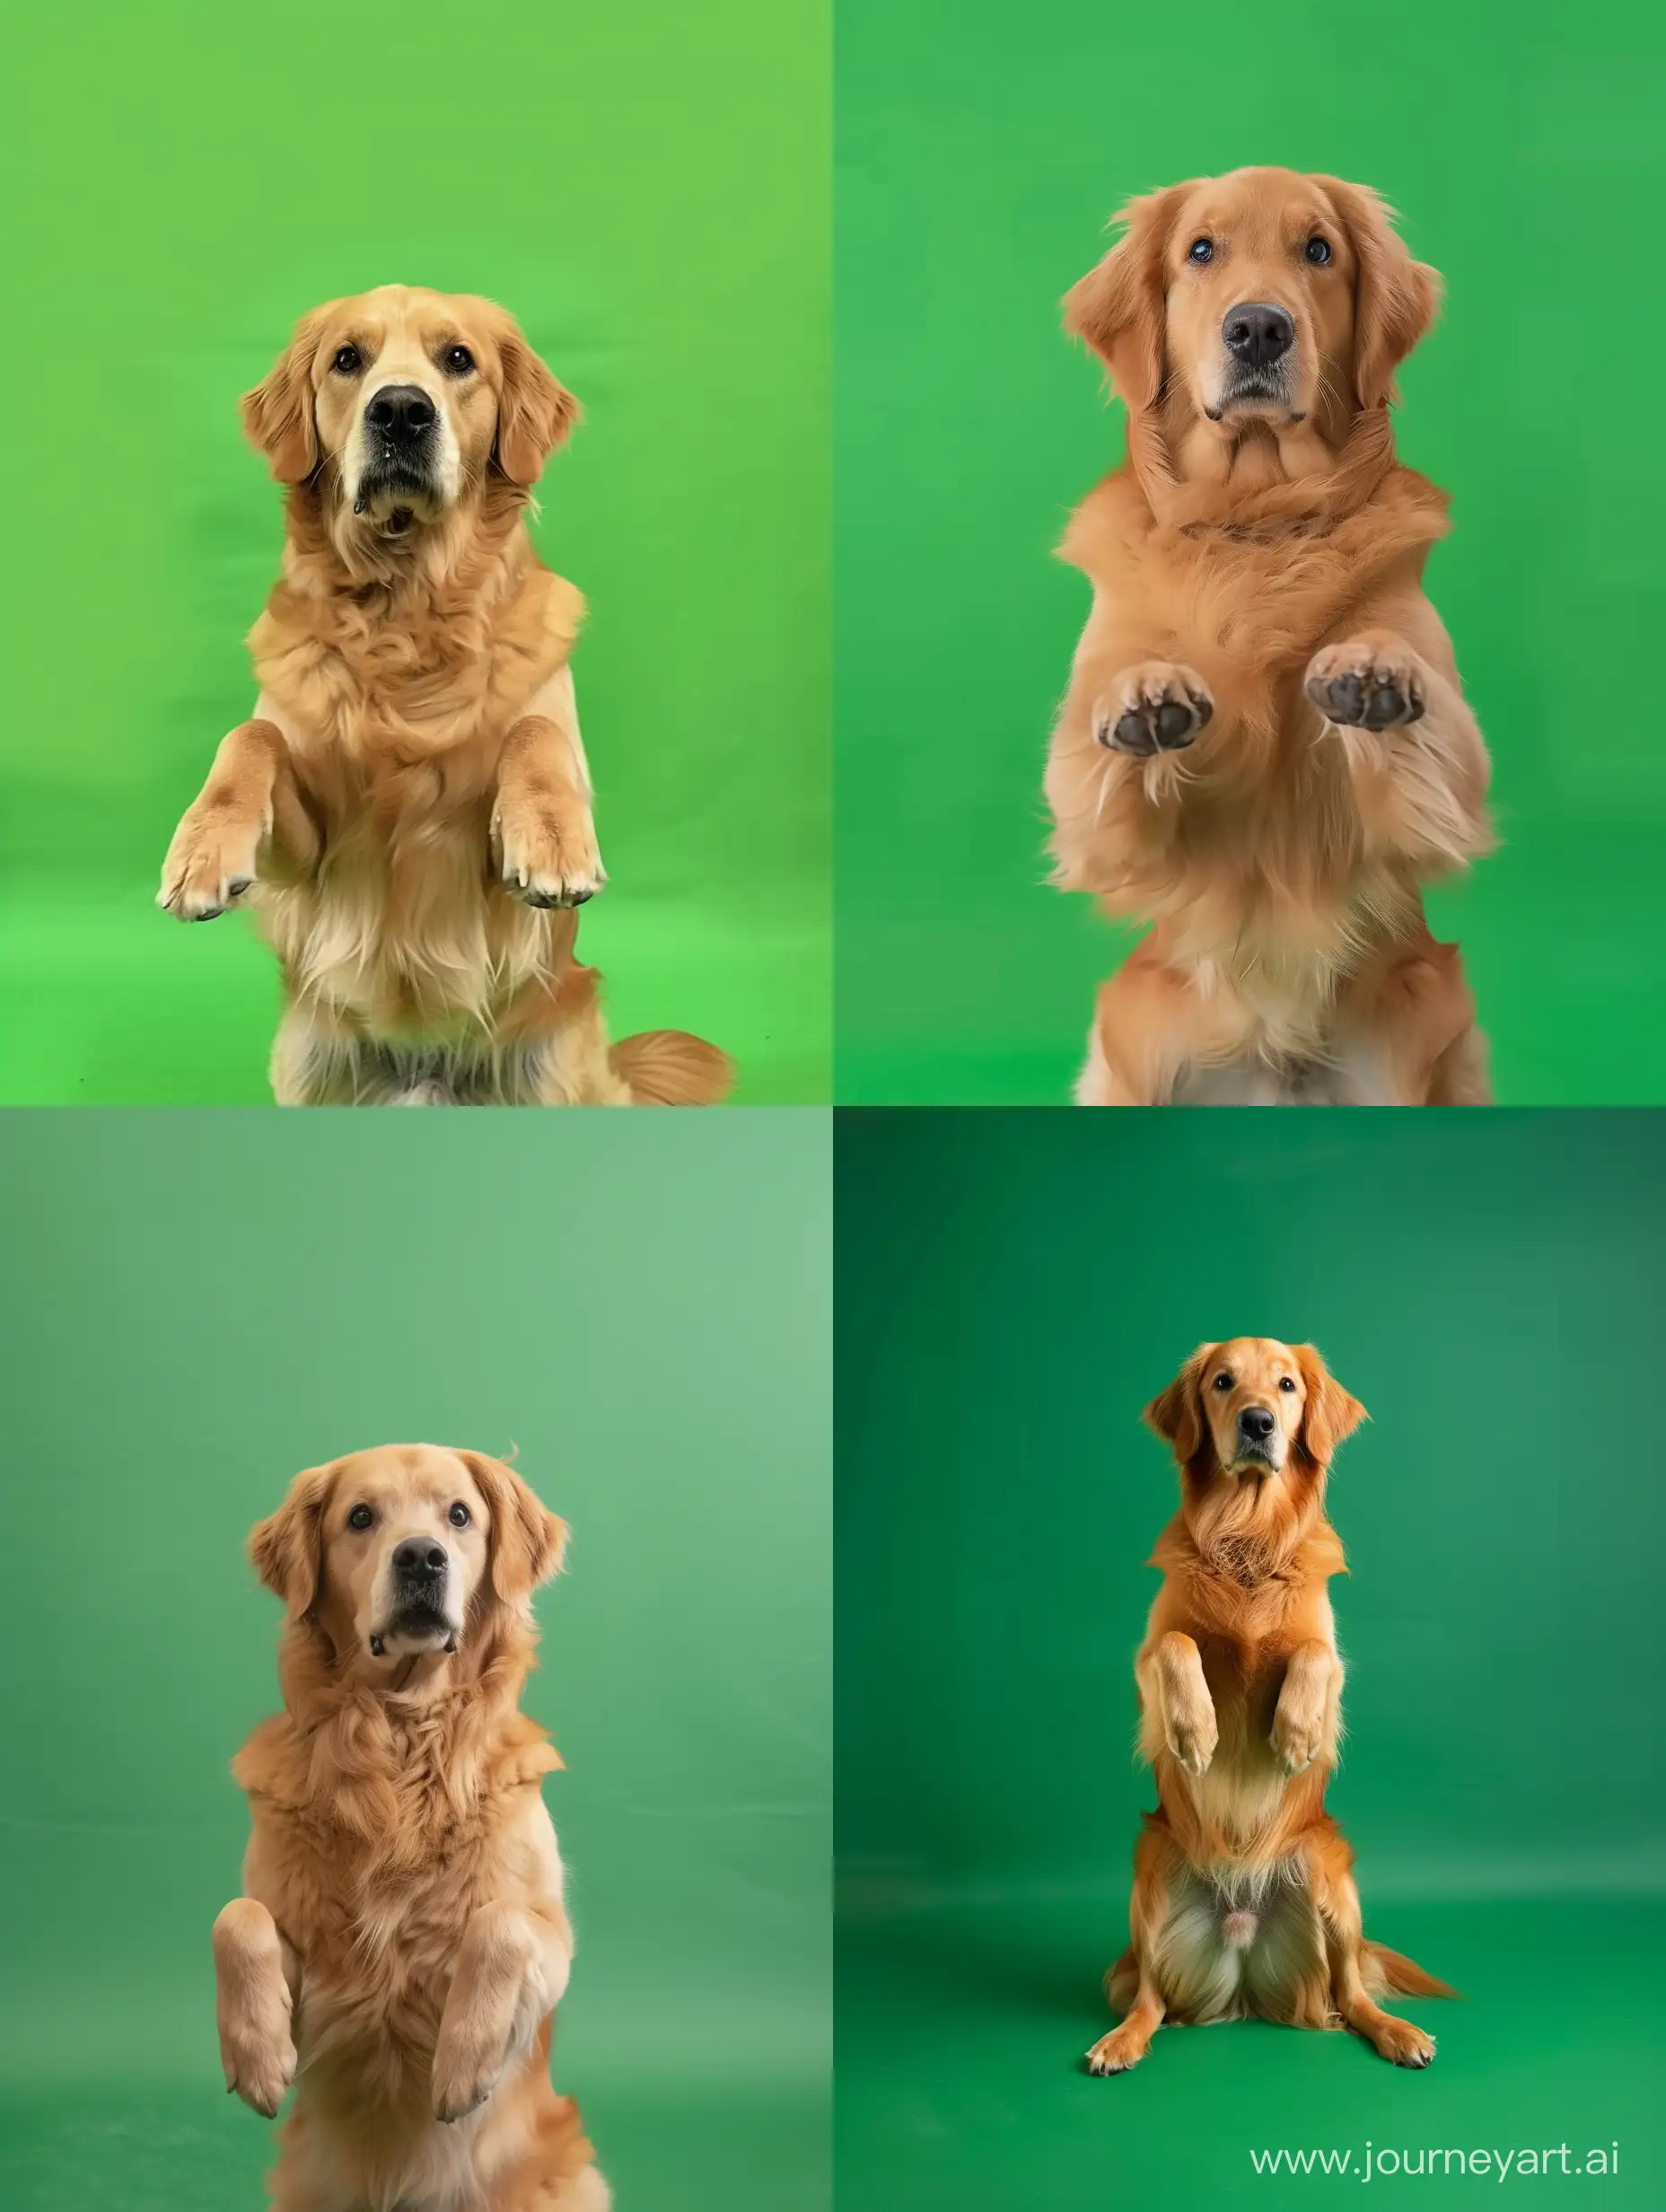 背景绿幕，写实，一只金毛犬，俩后脚站立，俩前脚放在胸前，面对镜头，